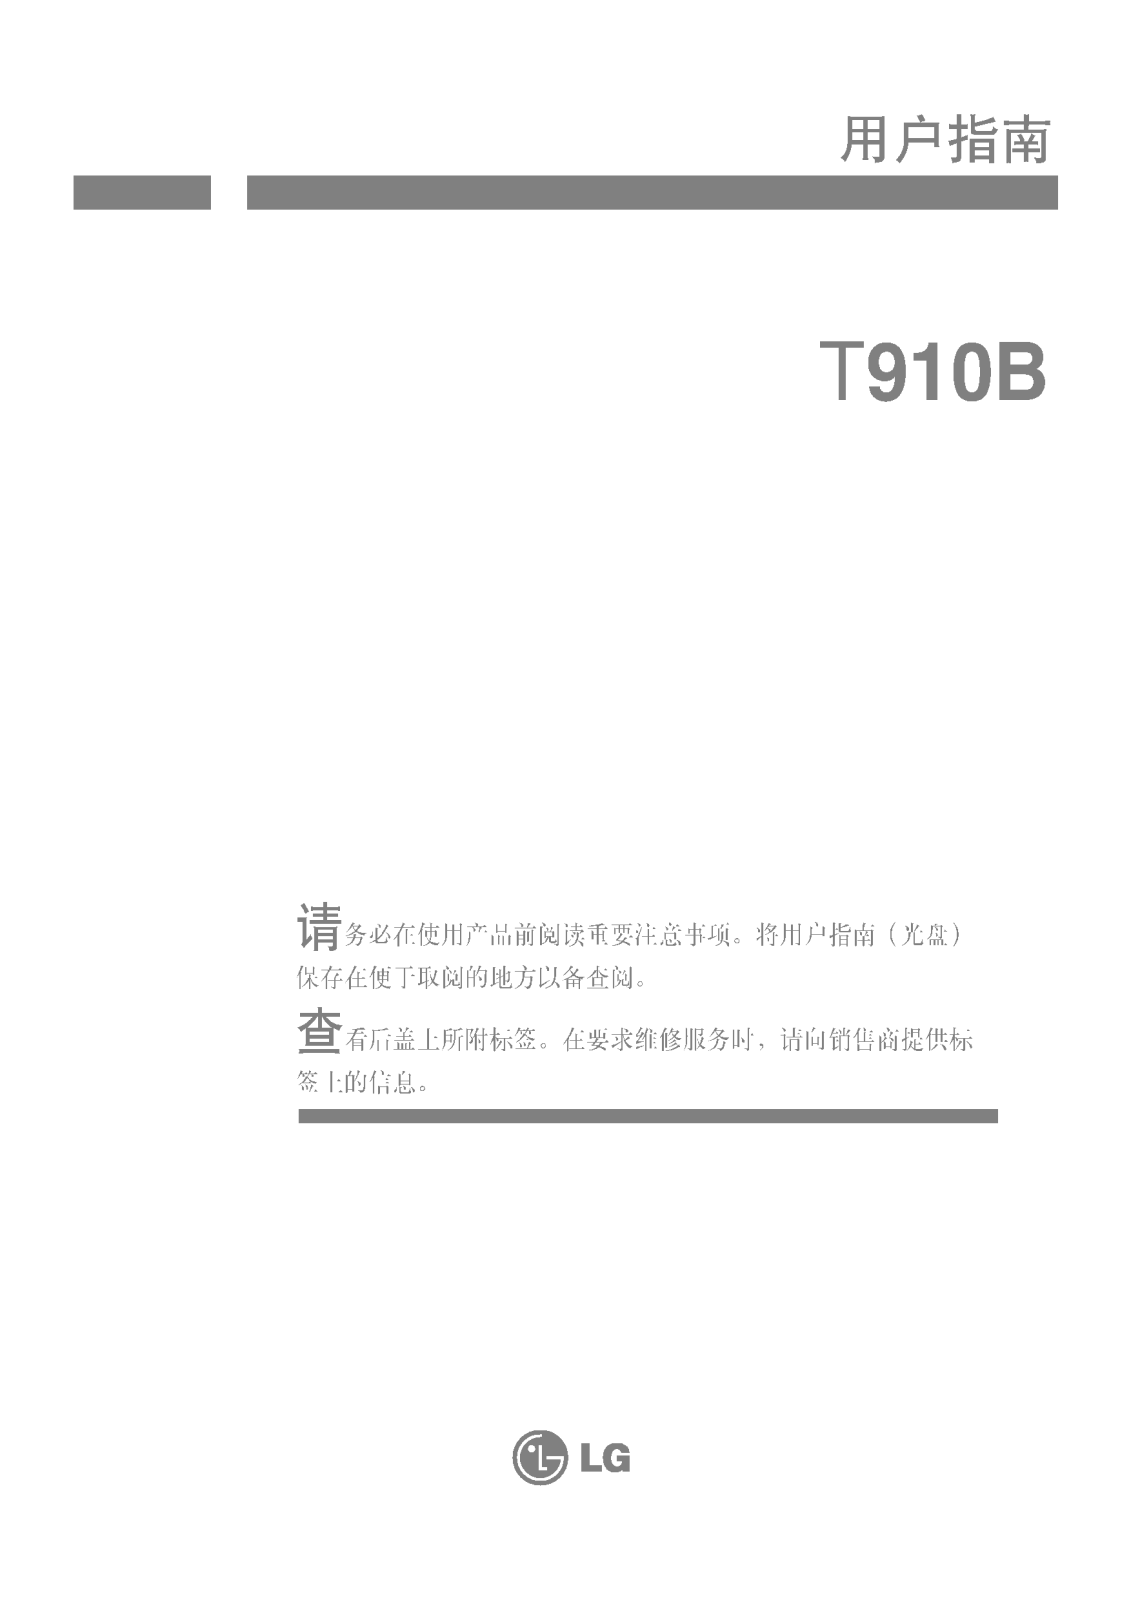 LG T910B Owner’s Manual